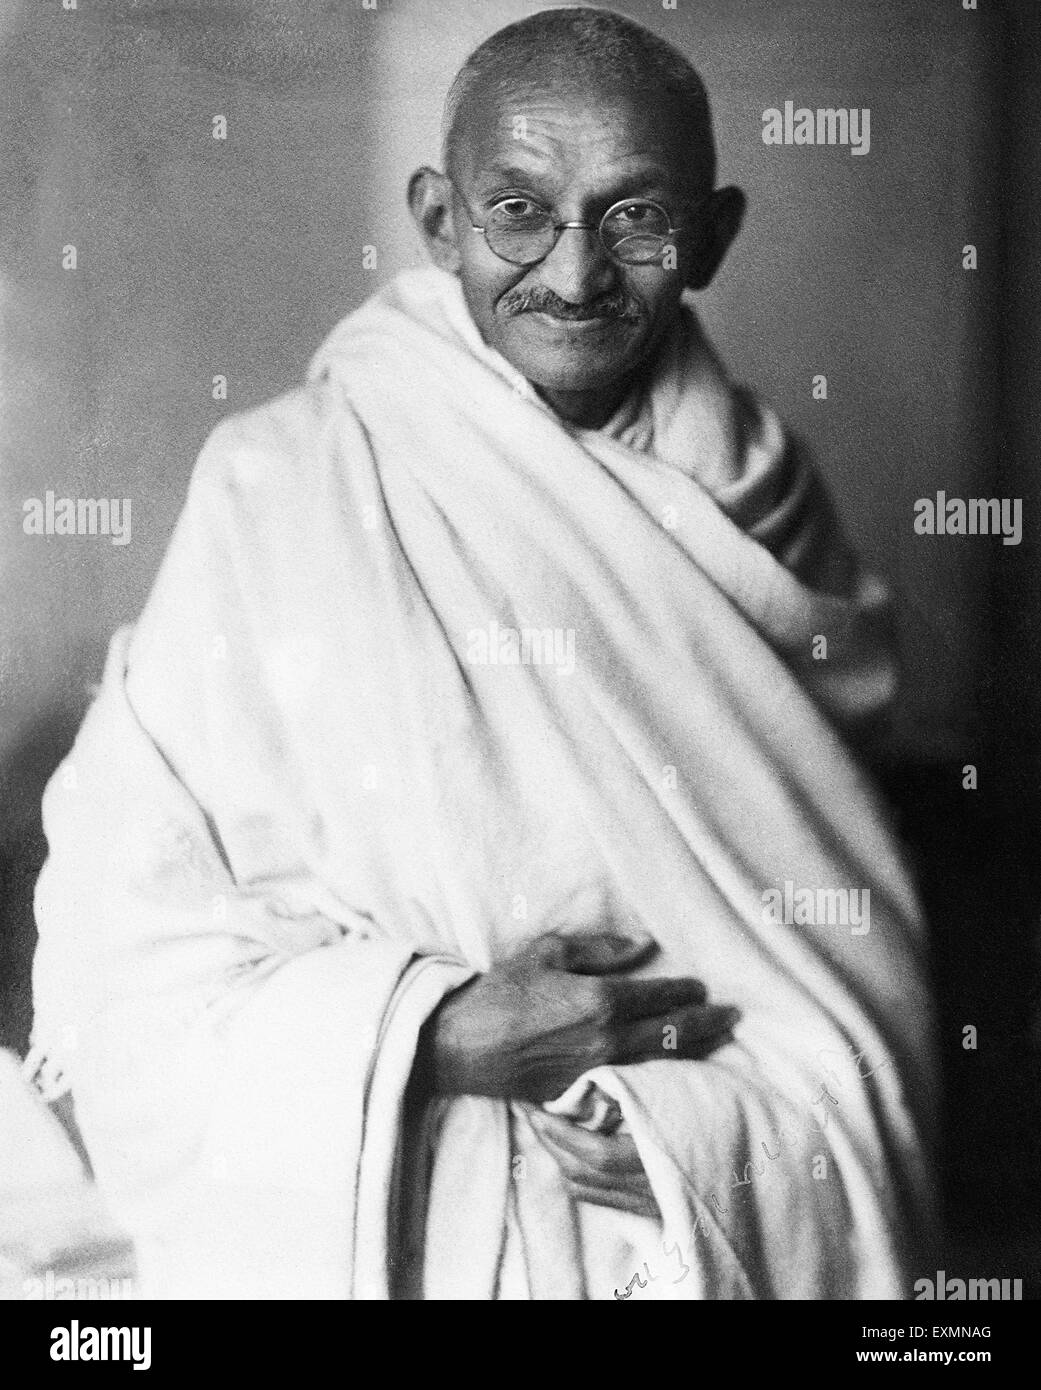 Mahatma Gandhi portrait 1940s old vintage 1900s picture Stock Photo